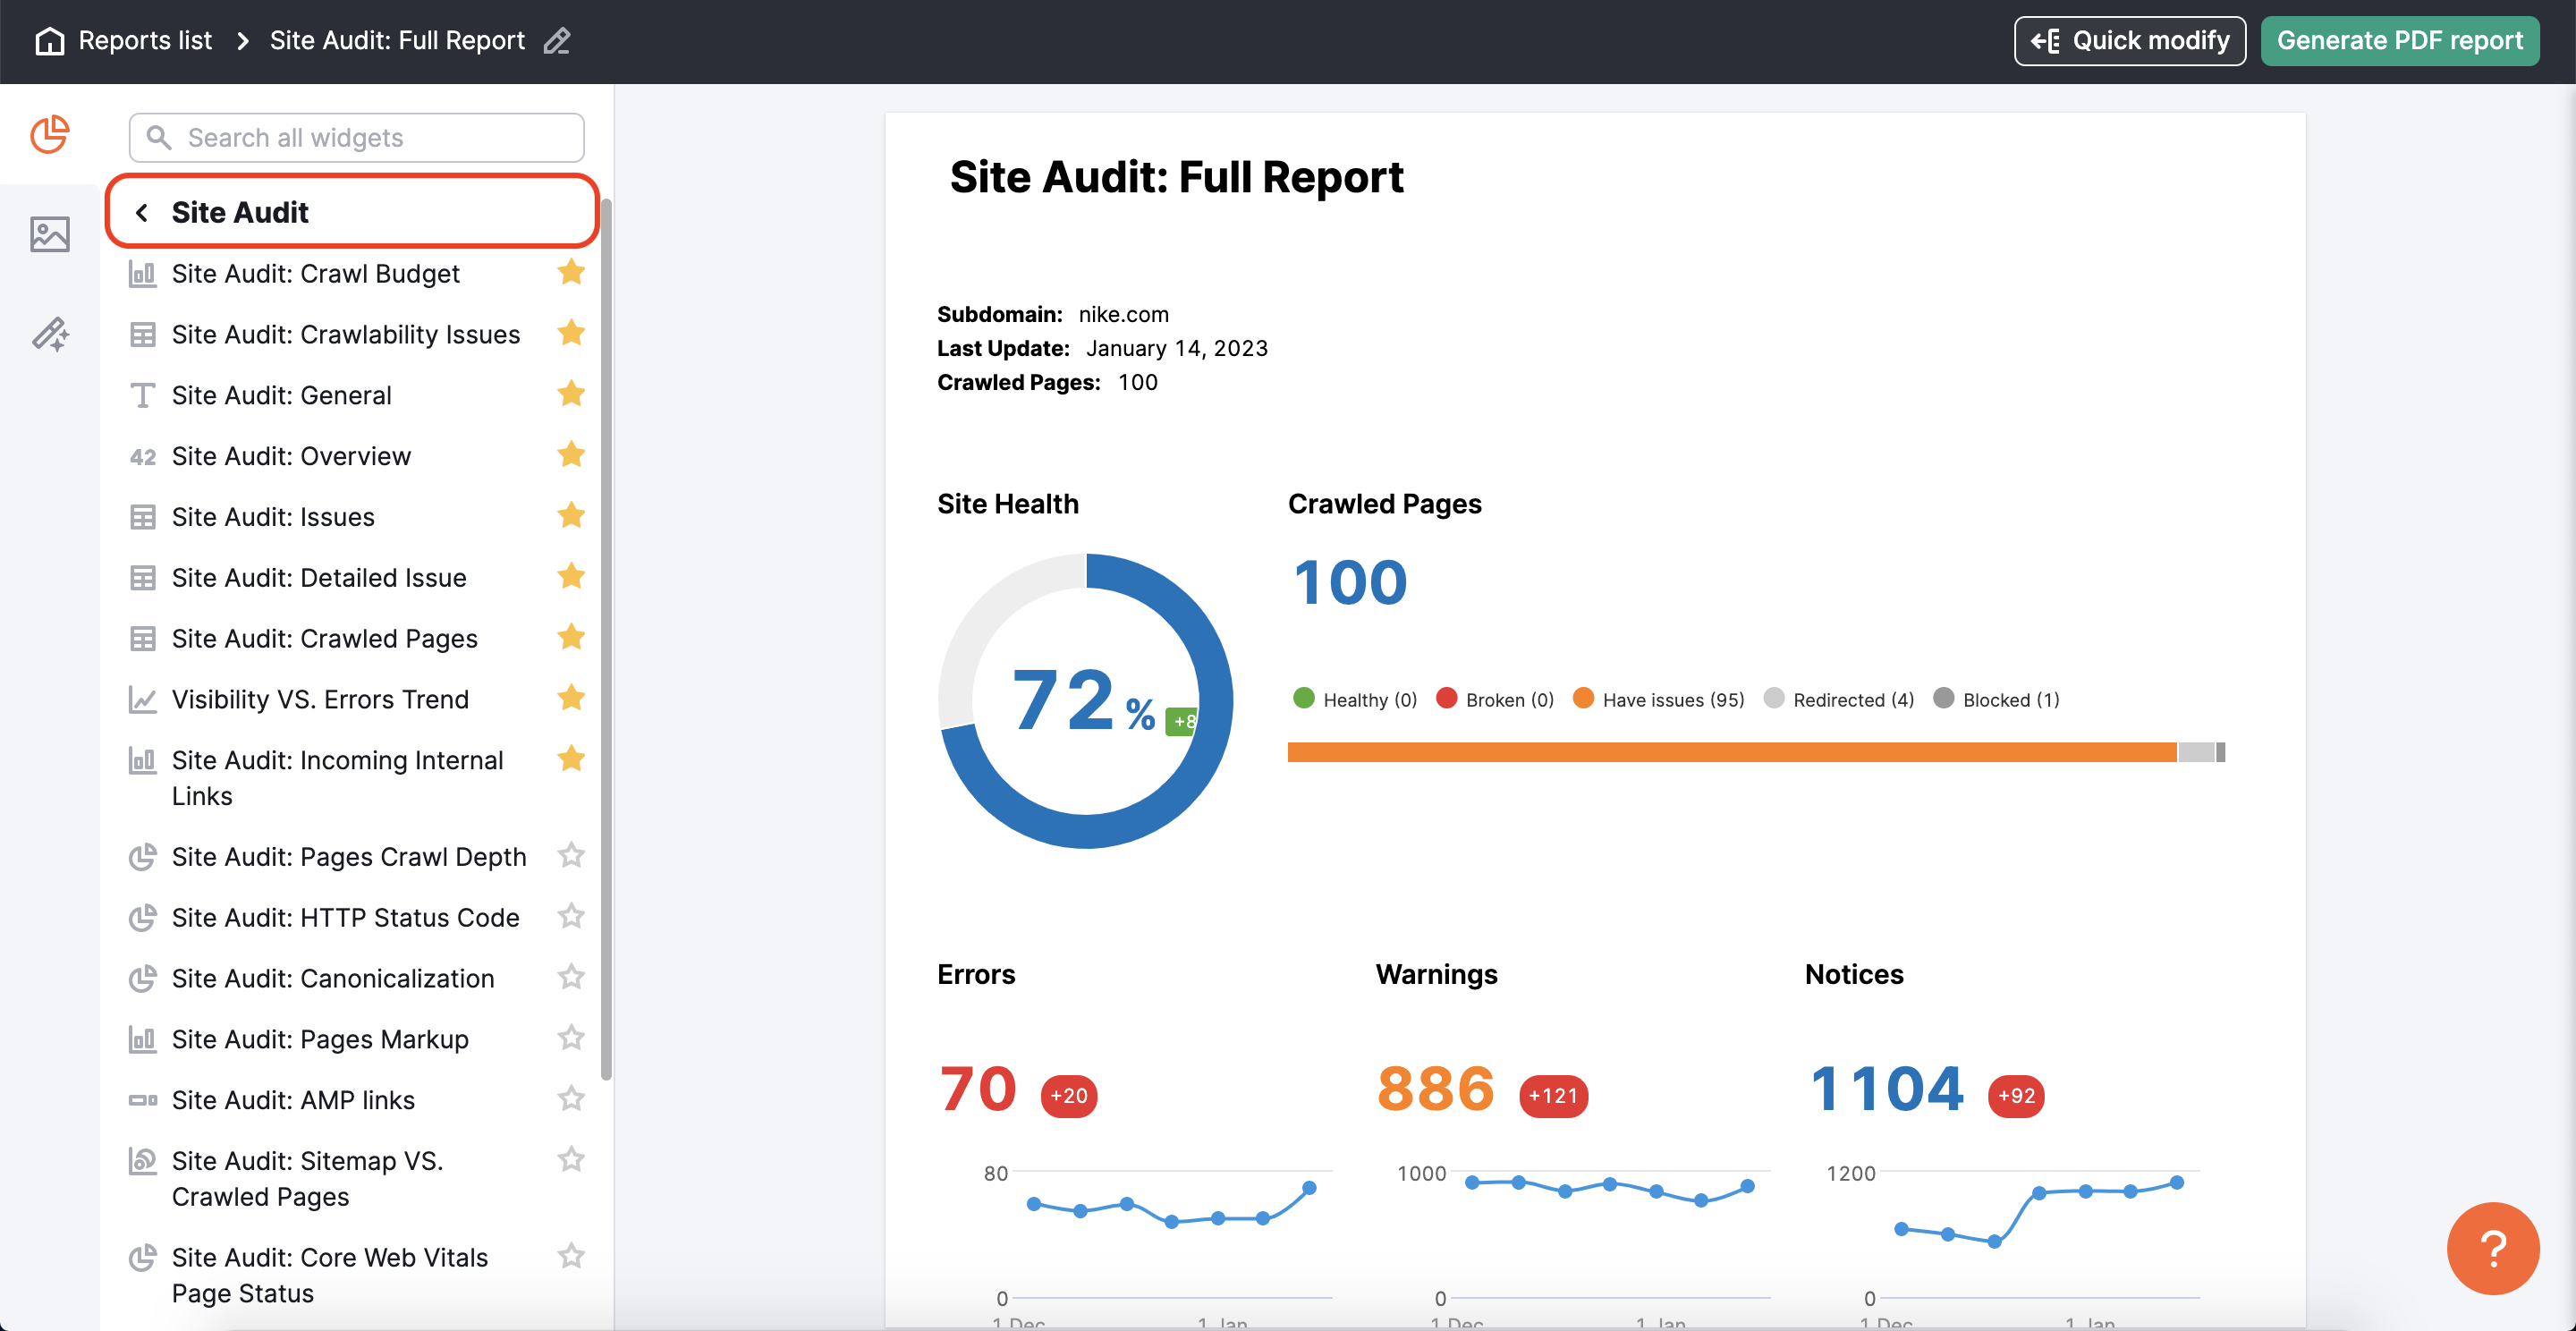 Site Audit widgets